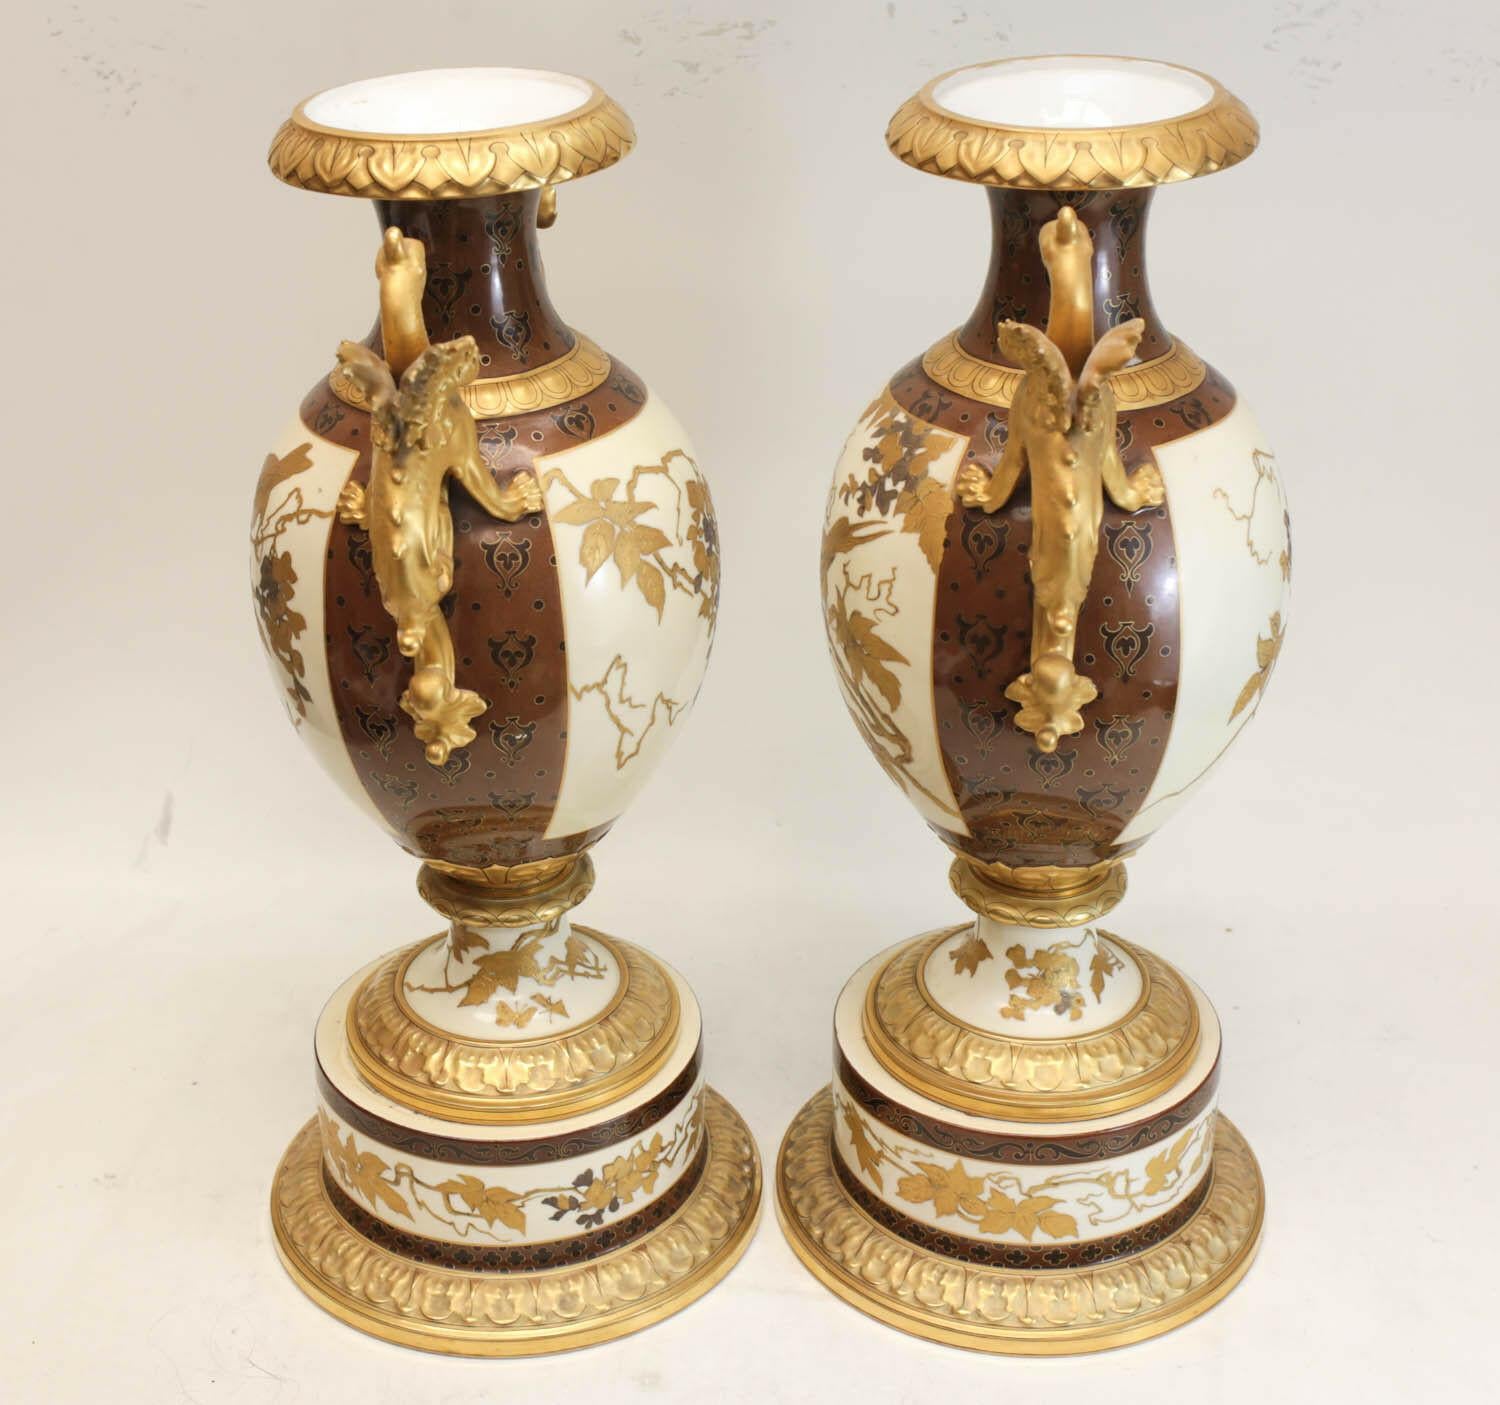 Pair of Pirkenhammer Porcelain Aesthetic Gold Encrusted Dragon Vases, circa 1880 For Sale 3